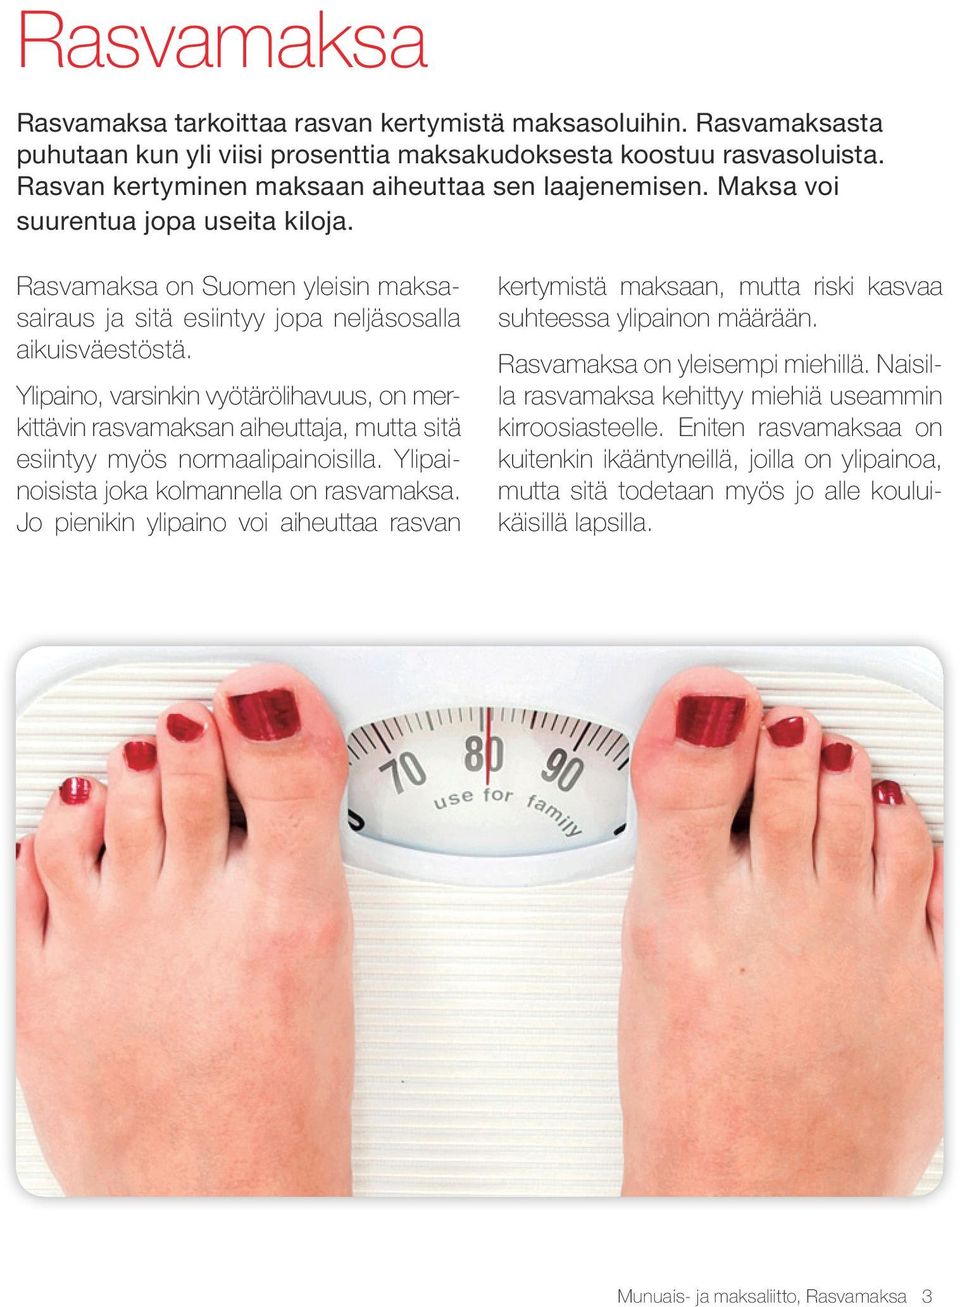 Ylipaino, varsinkin vyötärölihavuus, on merkittävin rasvamaksan aiheuttaja, mutta sitä esiintyy myös normaalipainoisilla. Ylipainoisista joka kolmannella on rasvamaksa.